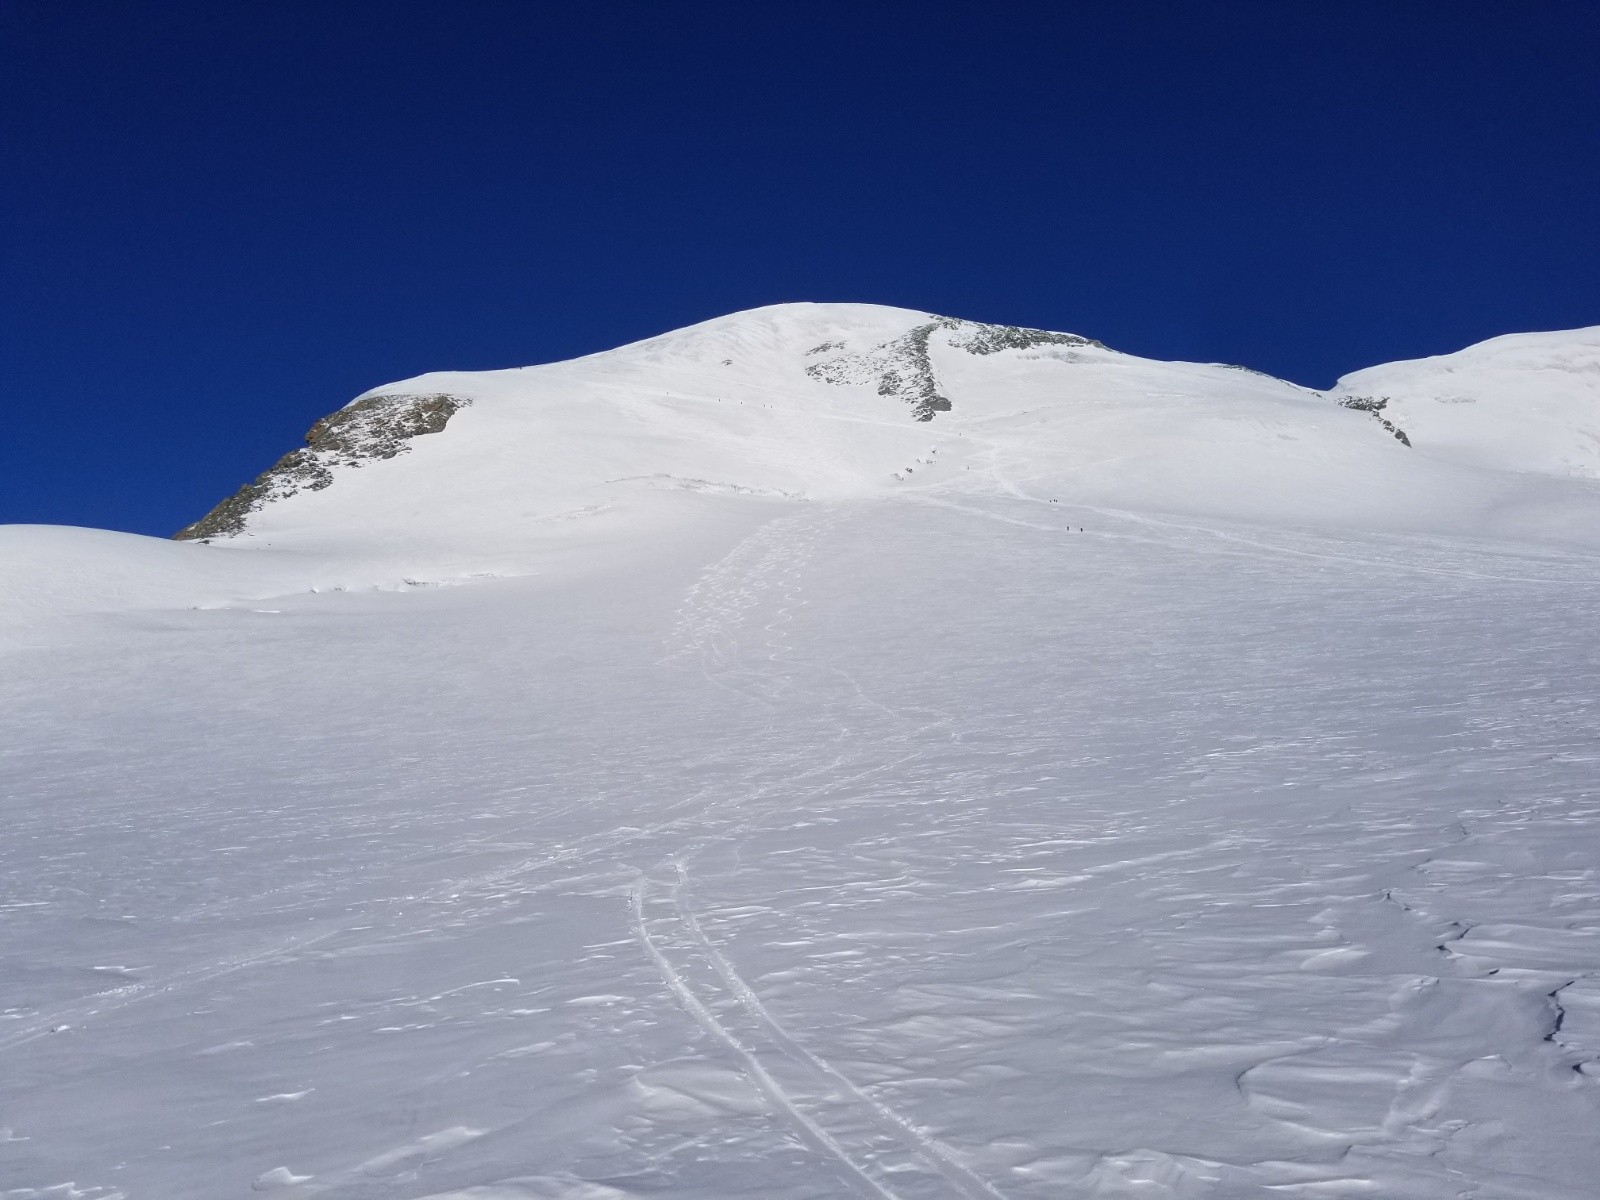 La face du Breithorn, déjà bien skiée !